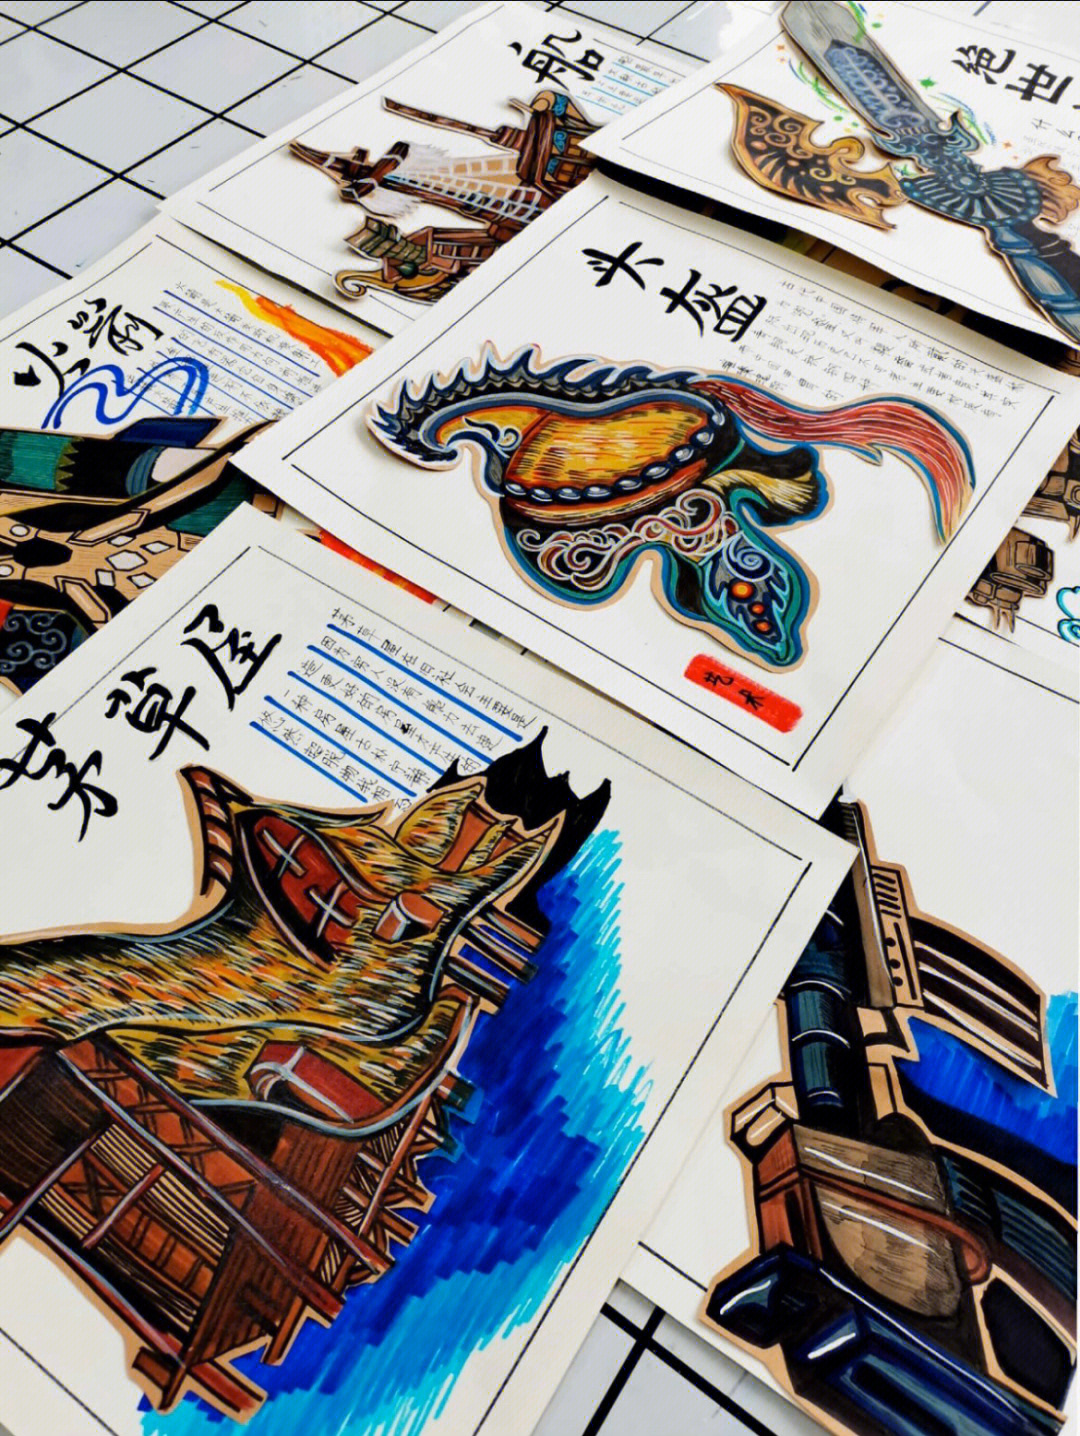 了解中国传统文化的特色绘画课程